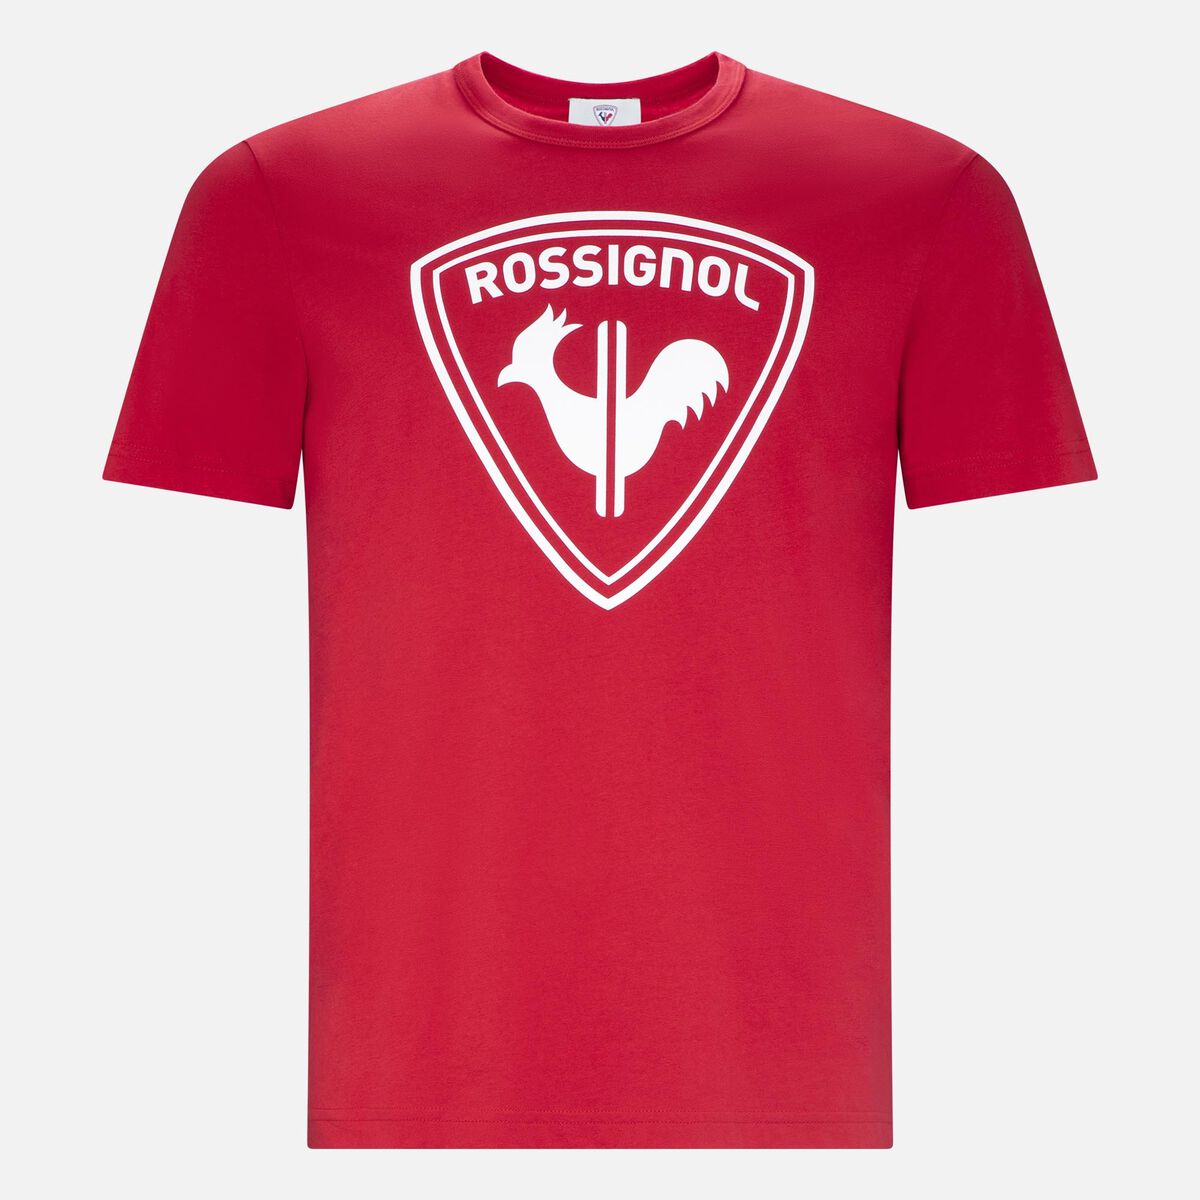 Rossignol T-shirt Logo Rossignol Homme red